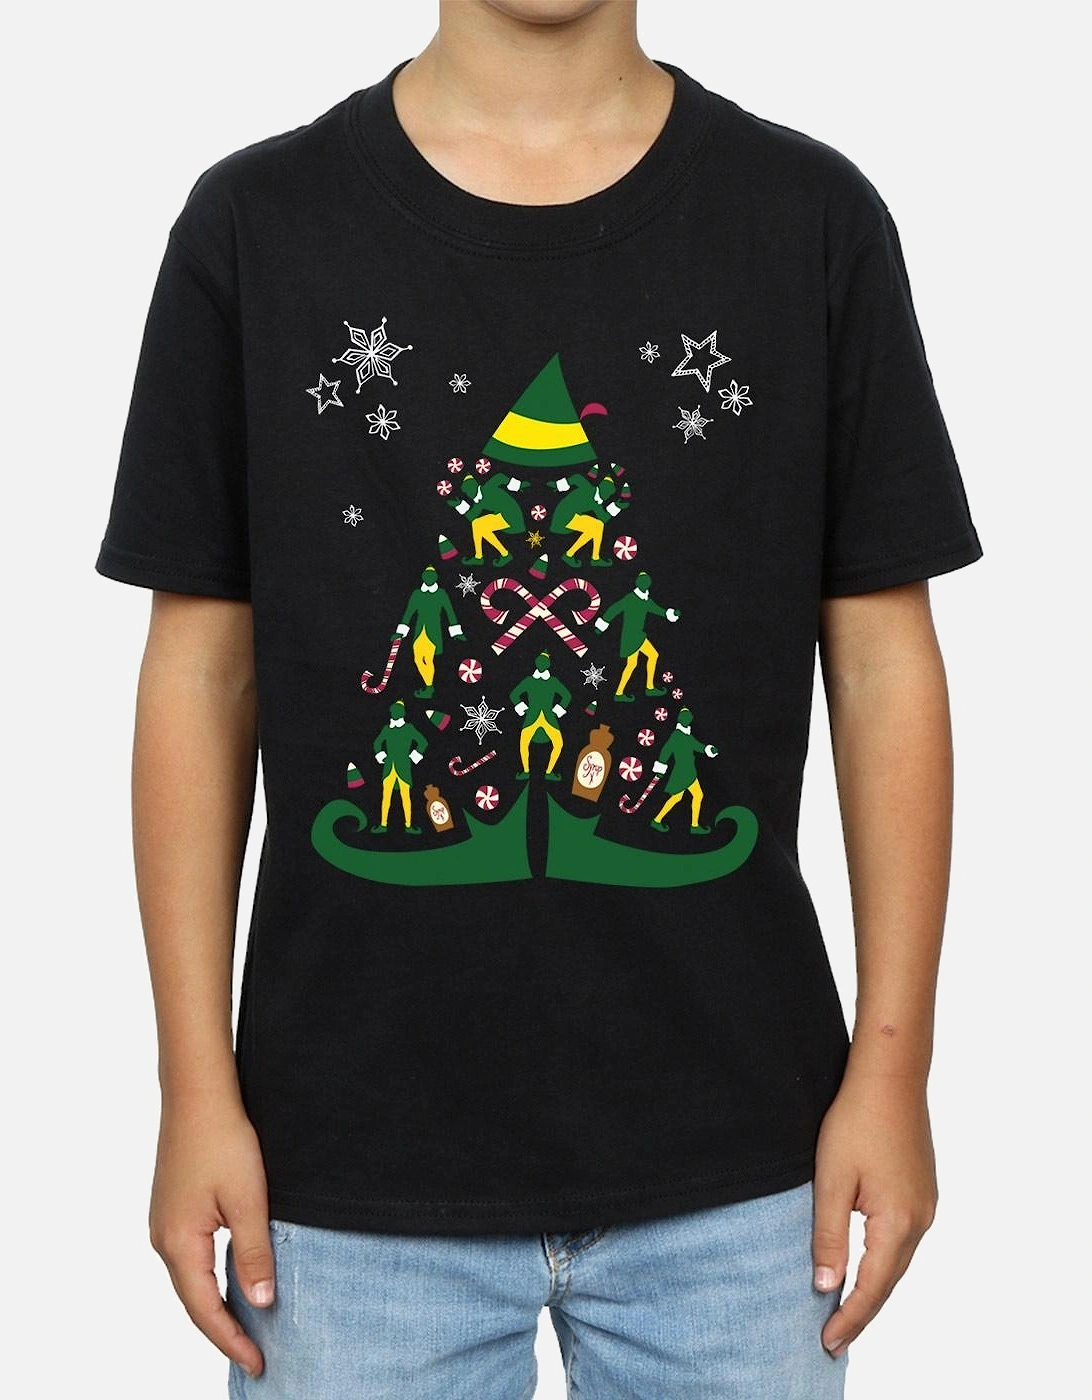 Boys Christmas Tree T-Shirt